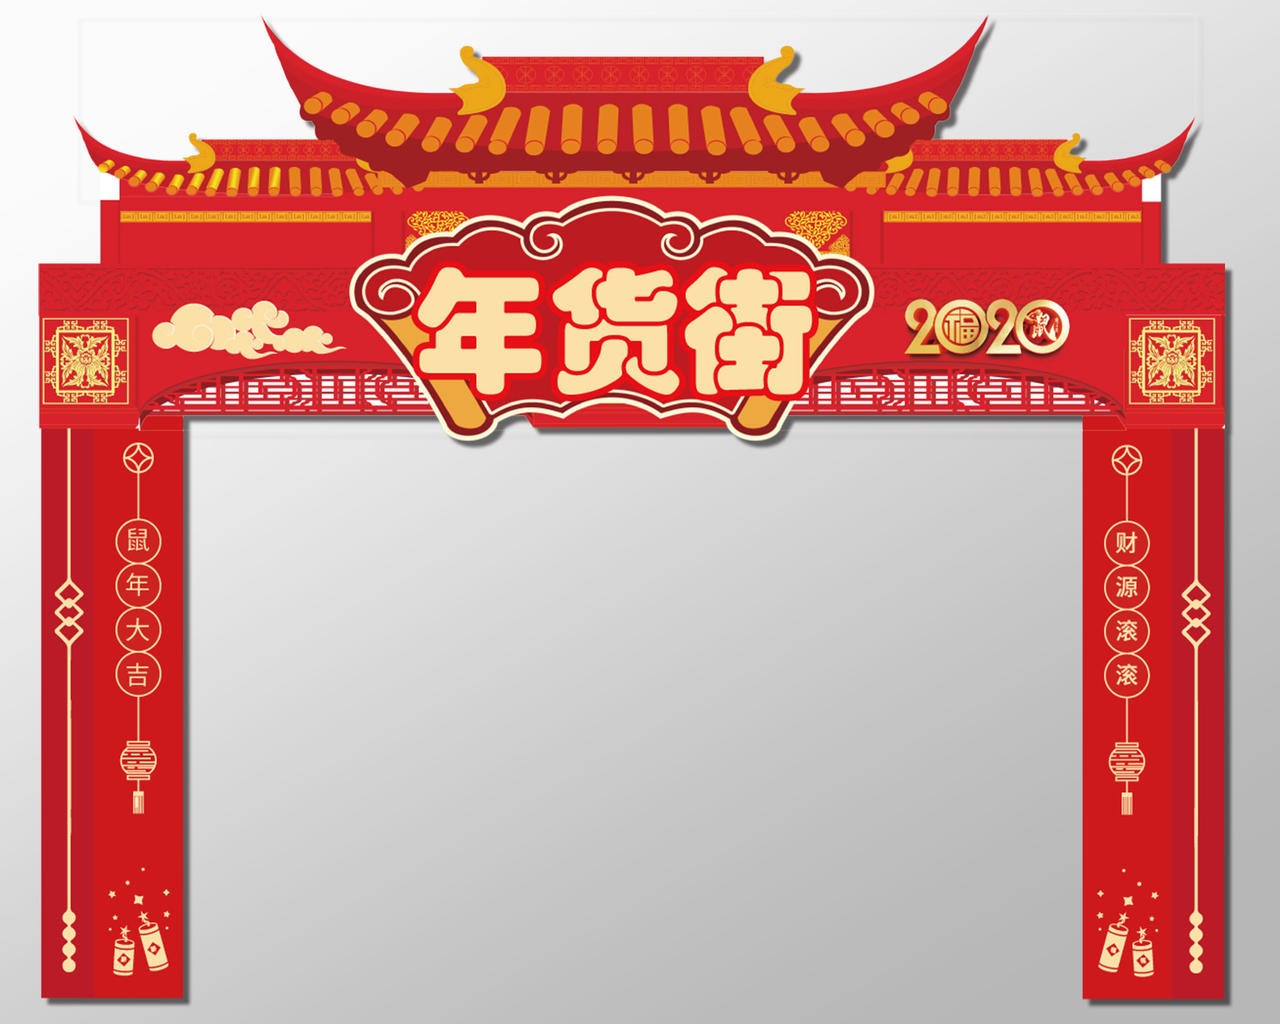 红色几何中国风2020年货节新年布置装饰造型新年布置拱门门头2020年货节年货街